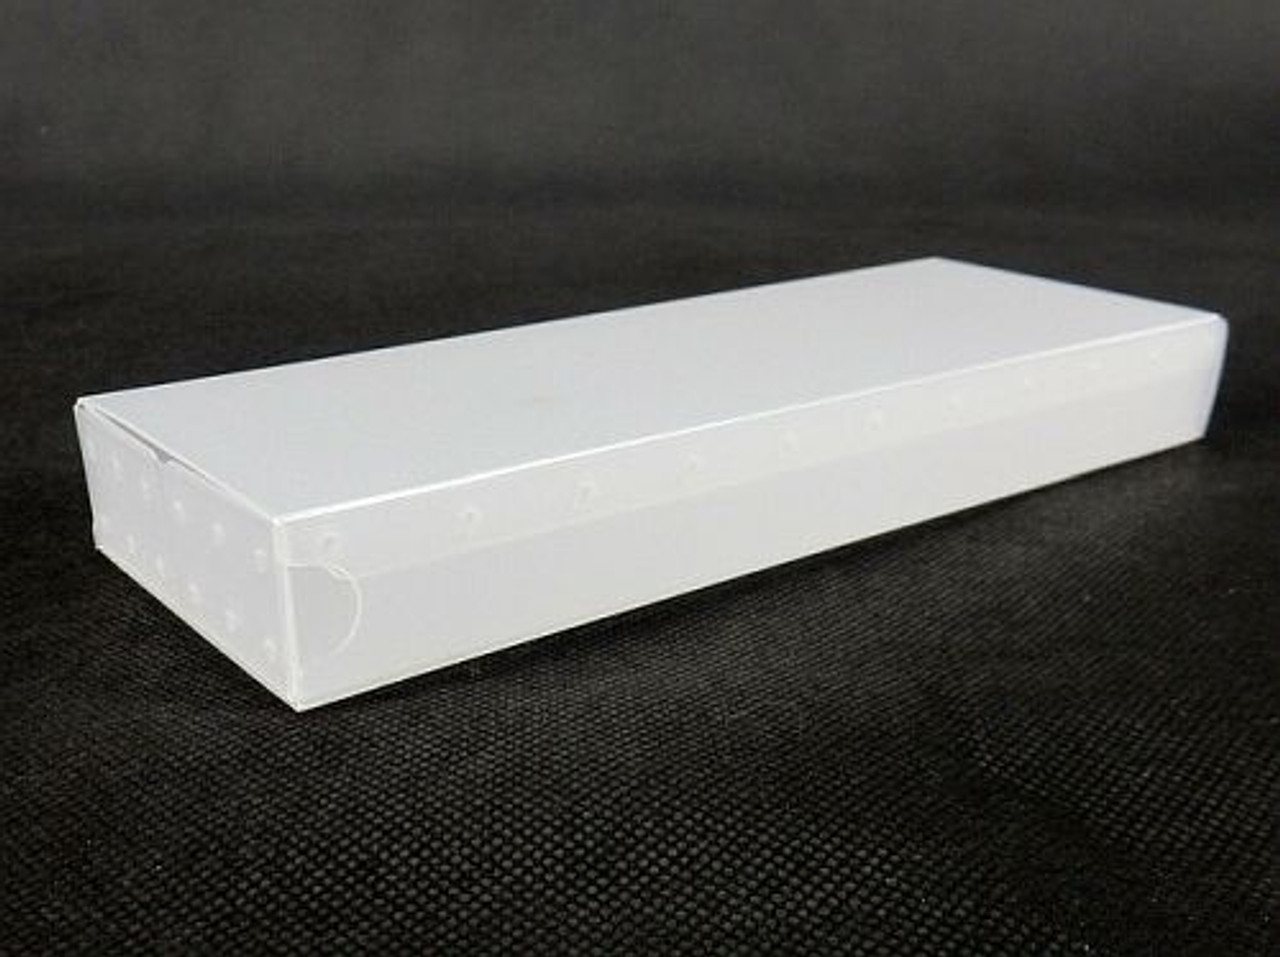 Pencil cases - plastic production